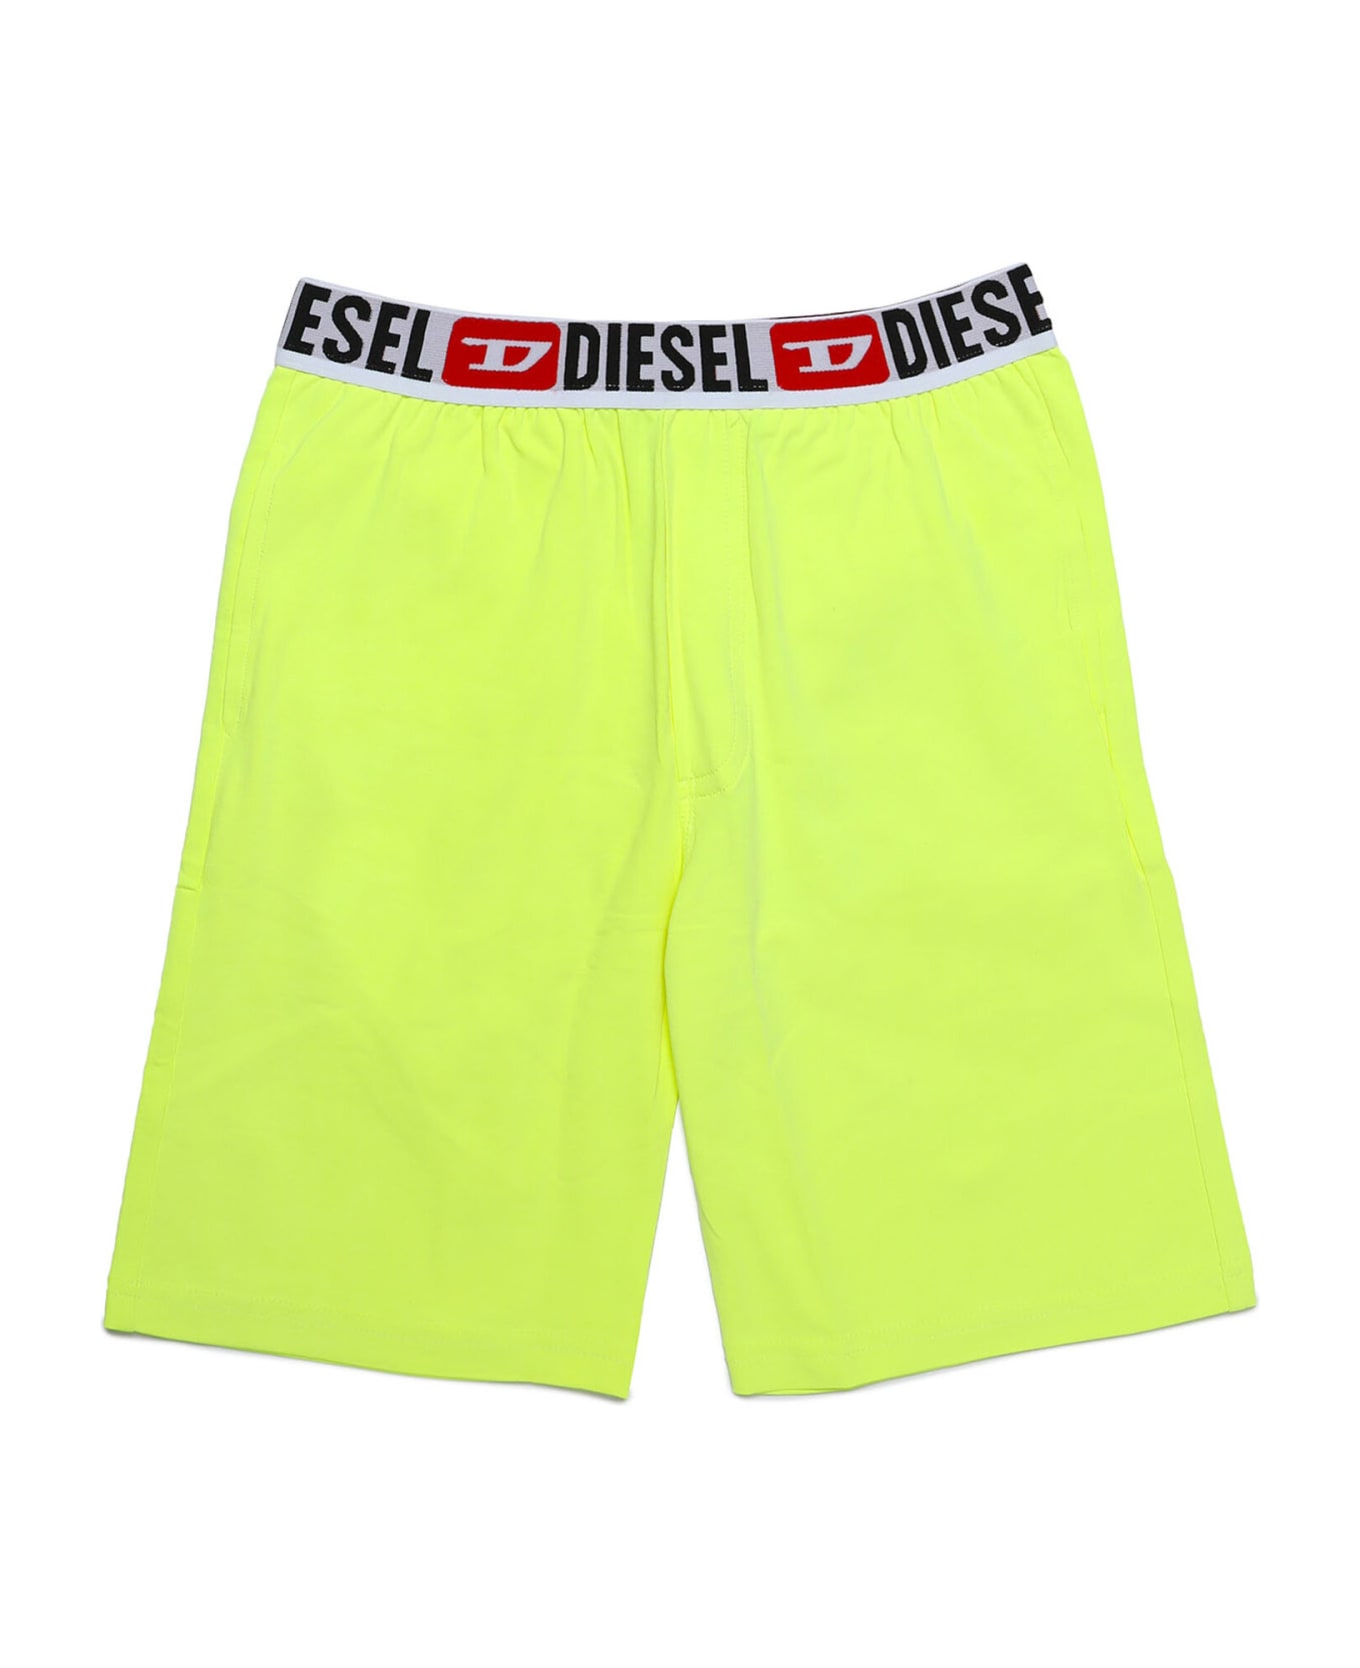 Diesel Unjulio Mc Pyjama Diesel - Yellow fluo